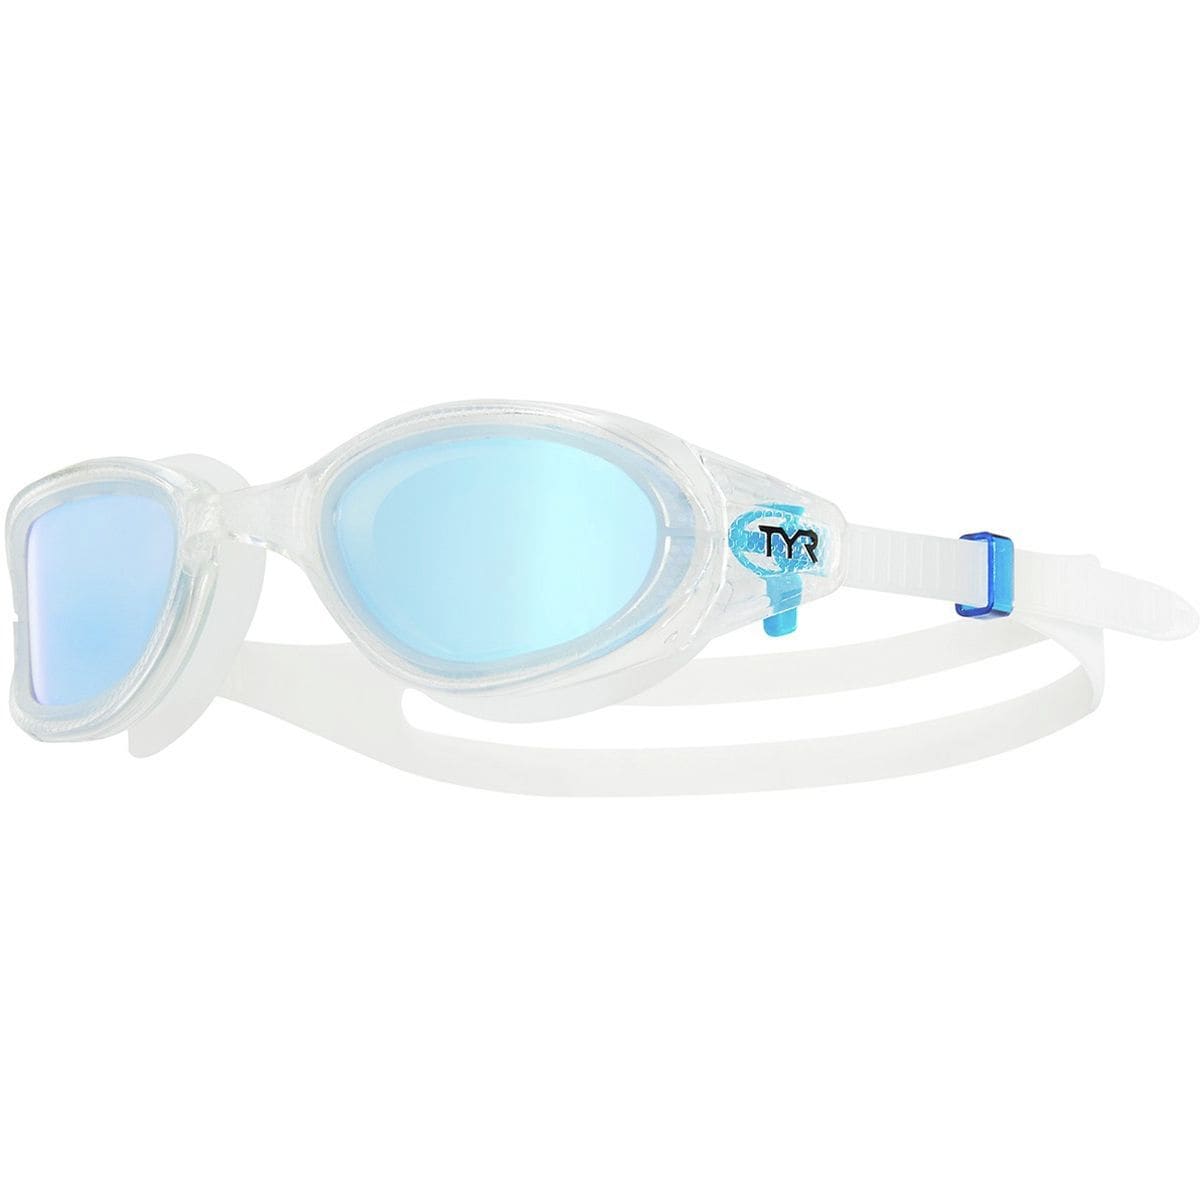 TYR Special Ops 3.0 Swim Goggles - Polarized